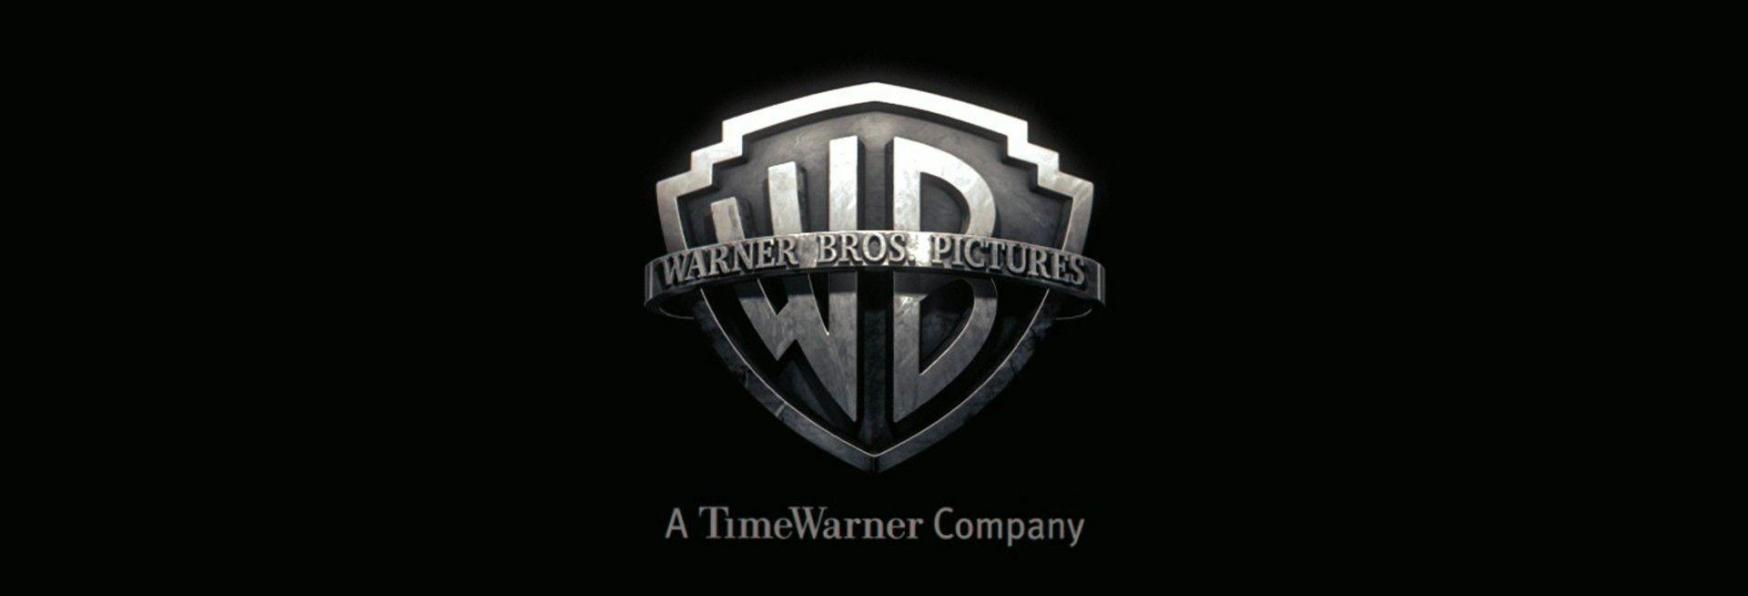 Warner Bros. TV sospende i Contratti con Greg Berlanti e Bad Robot di J.J. Abrams